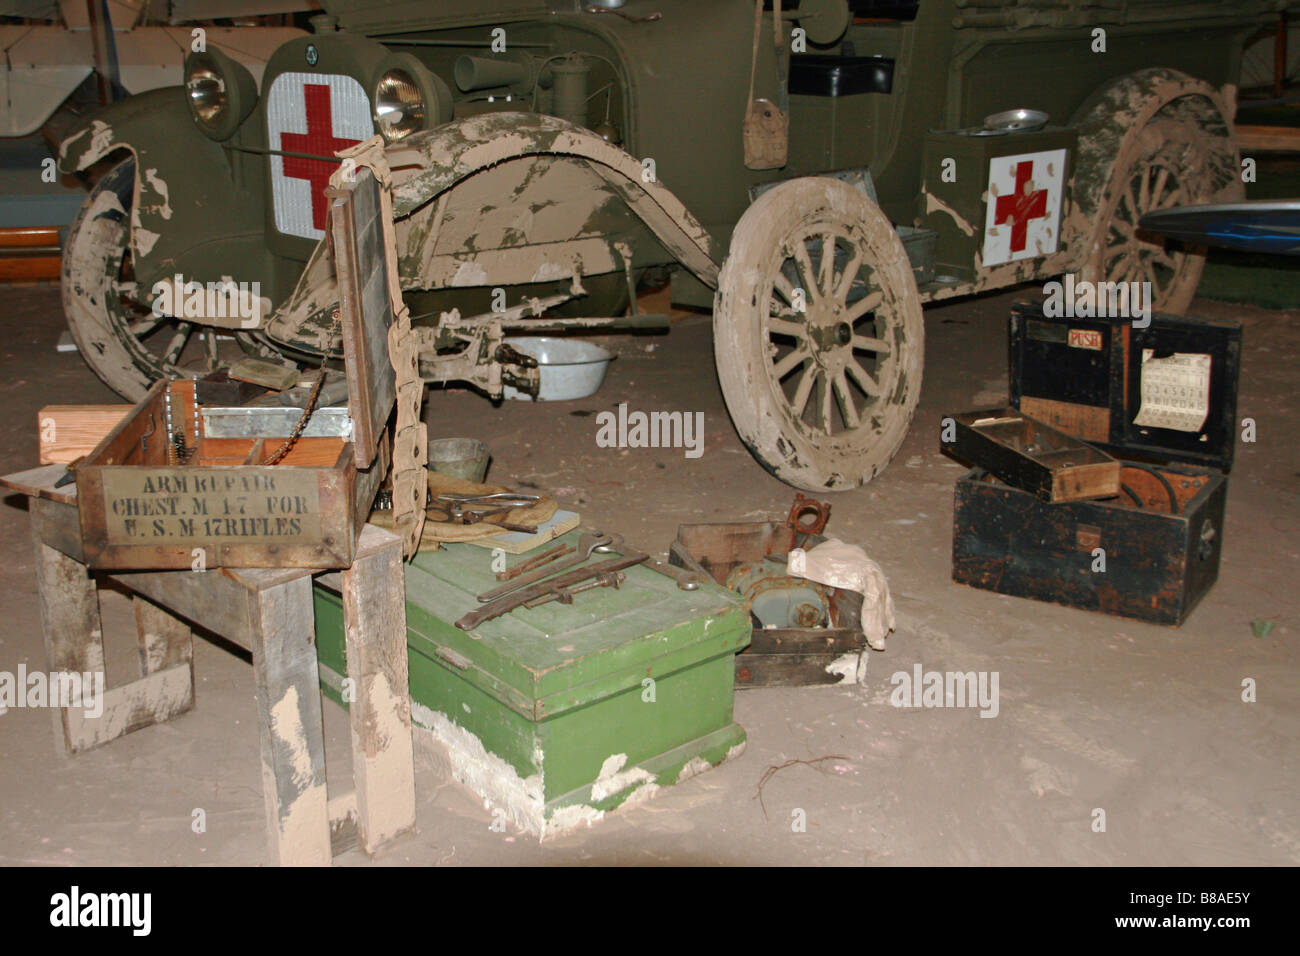 Adopter de nouveau militaire zone de guerre site avec croix rouge chariot Banque D'Images